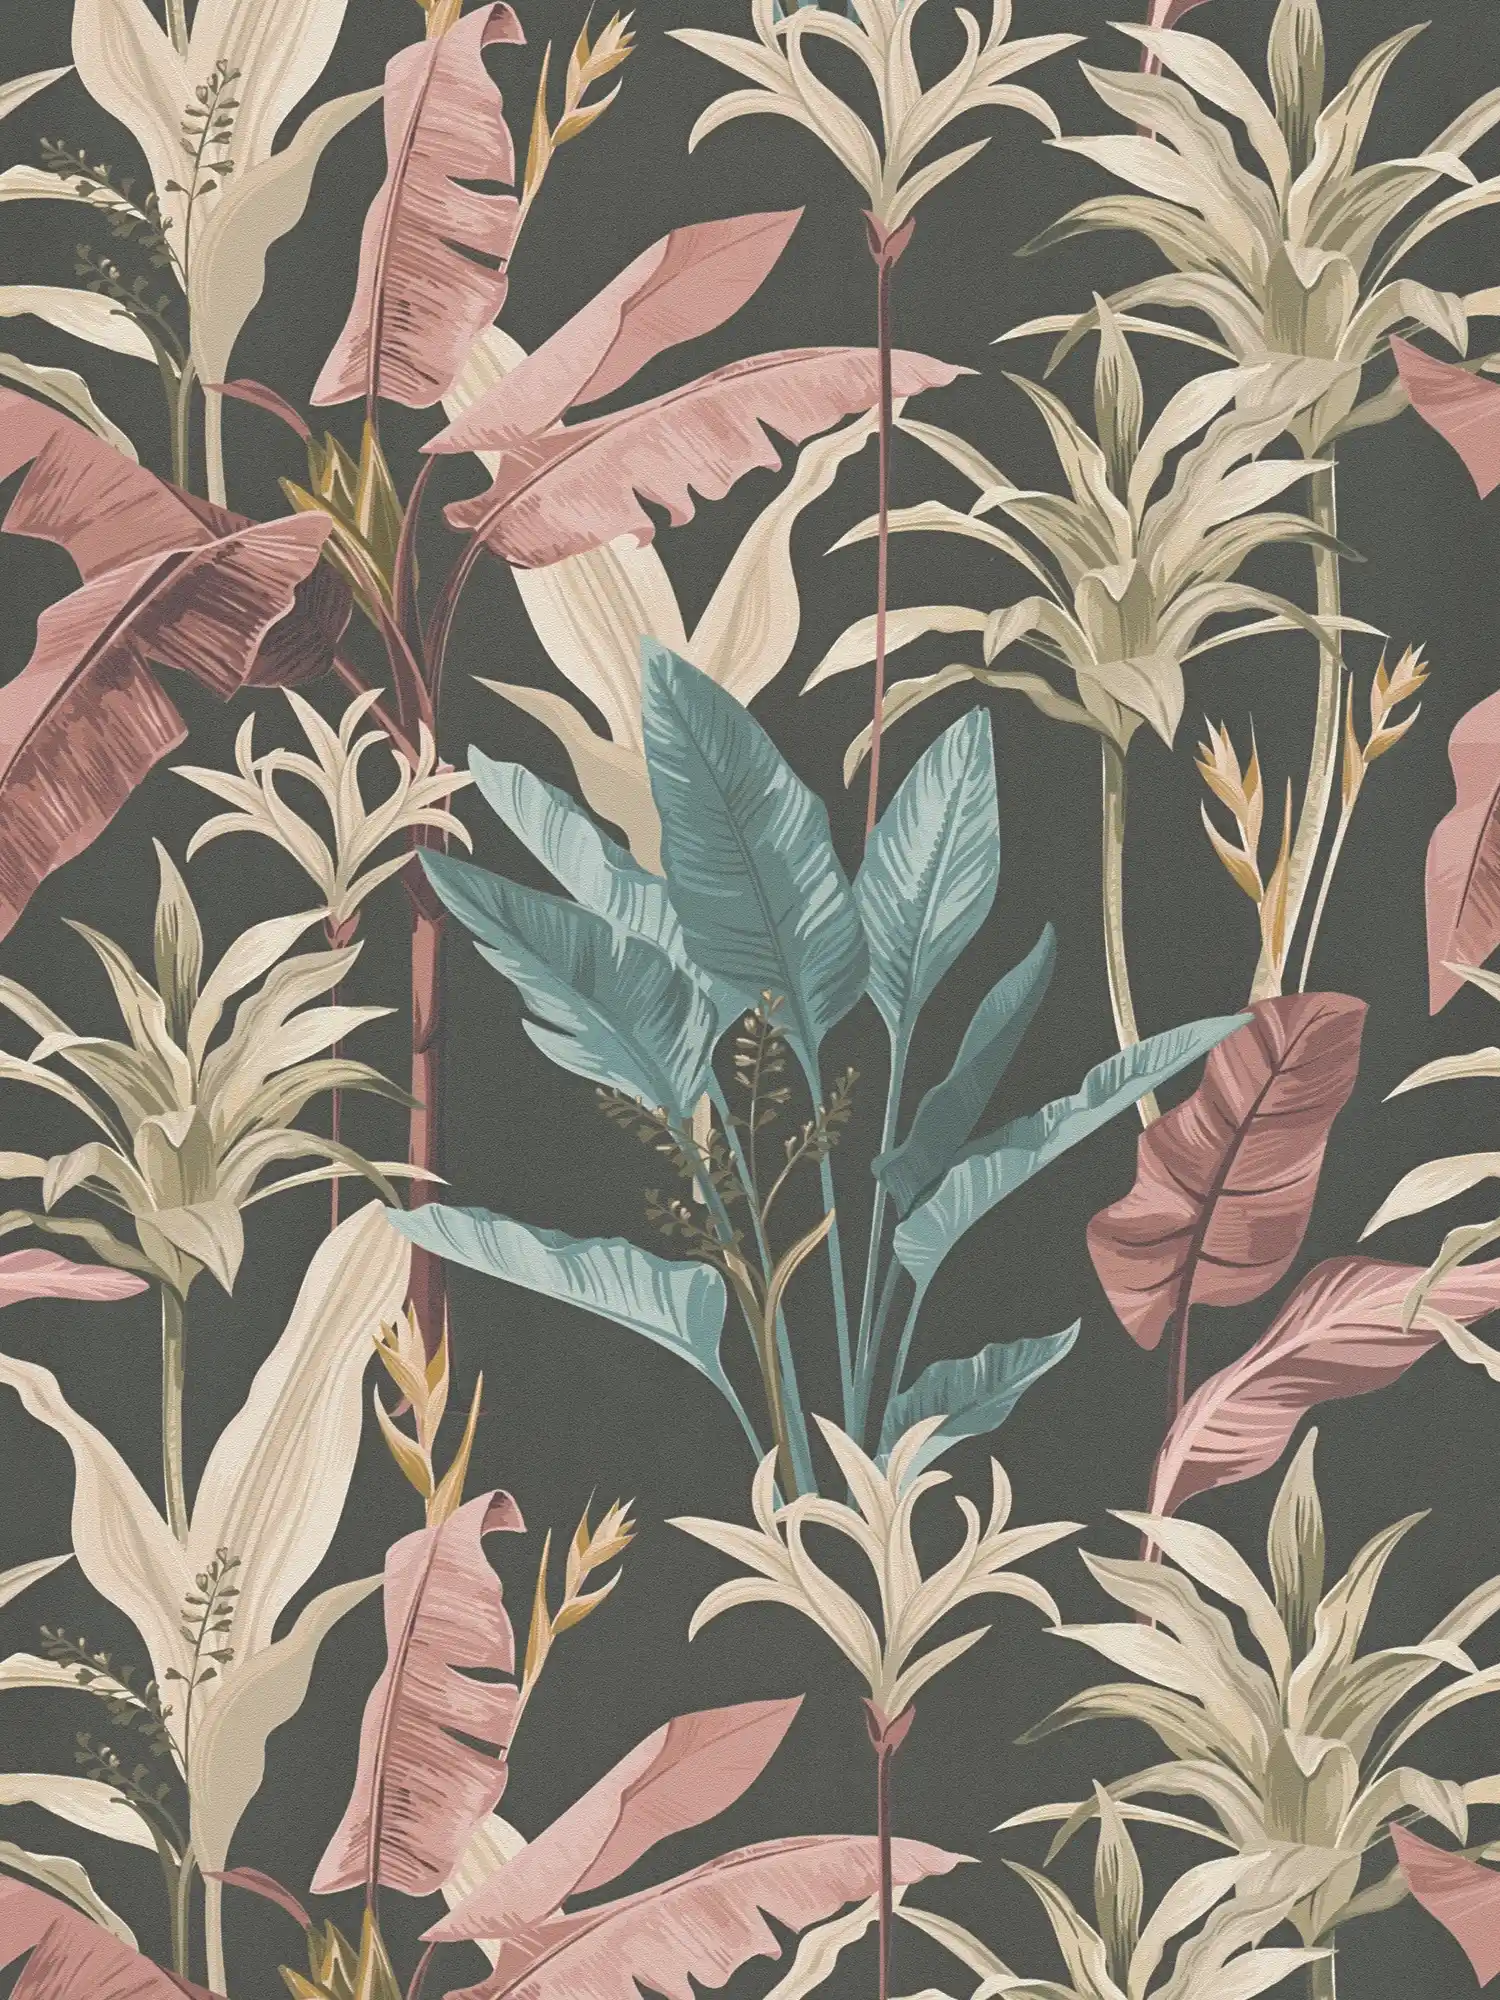 Vliestapete mit floralem Blätter Muster detailliert - Blau, Rosa, Braun
